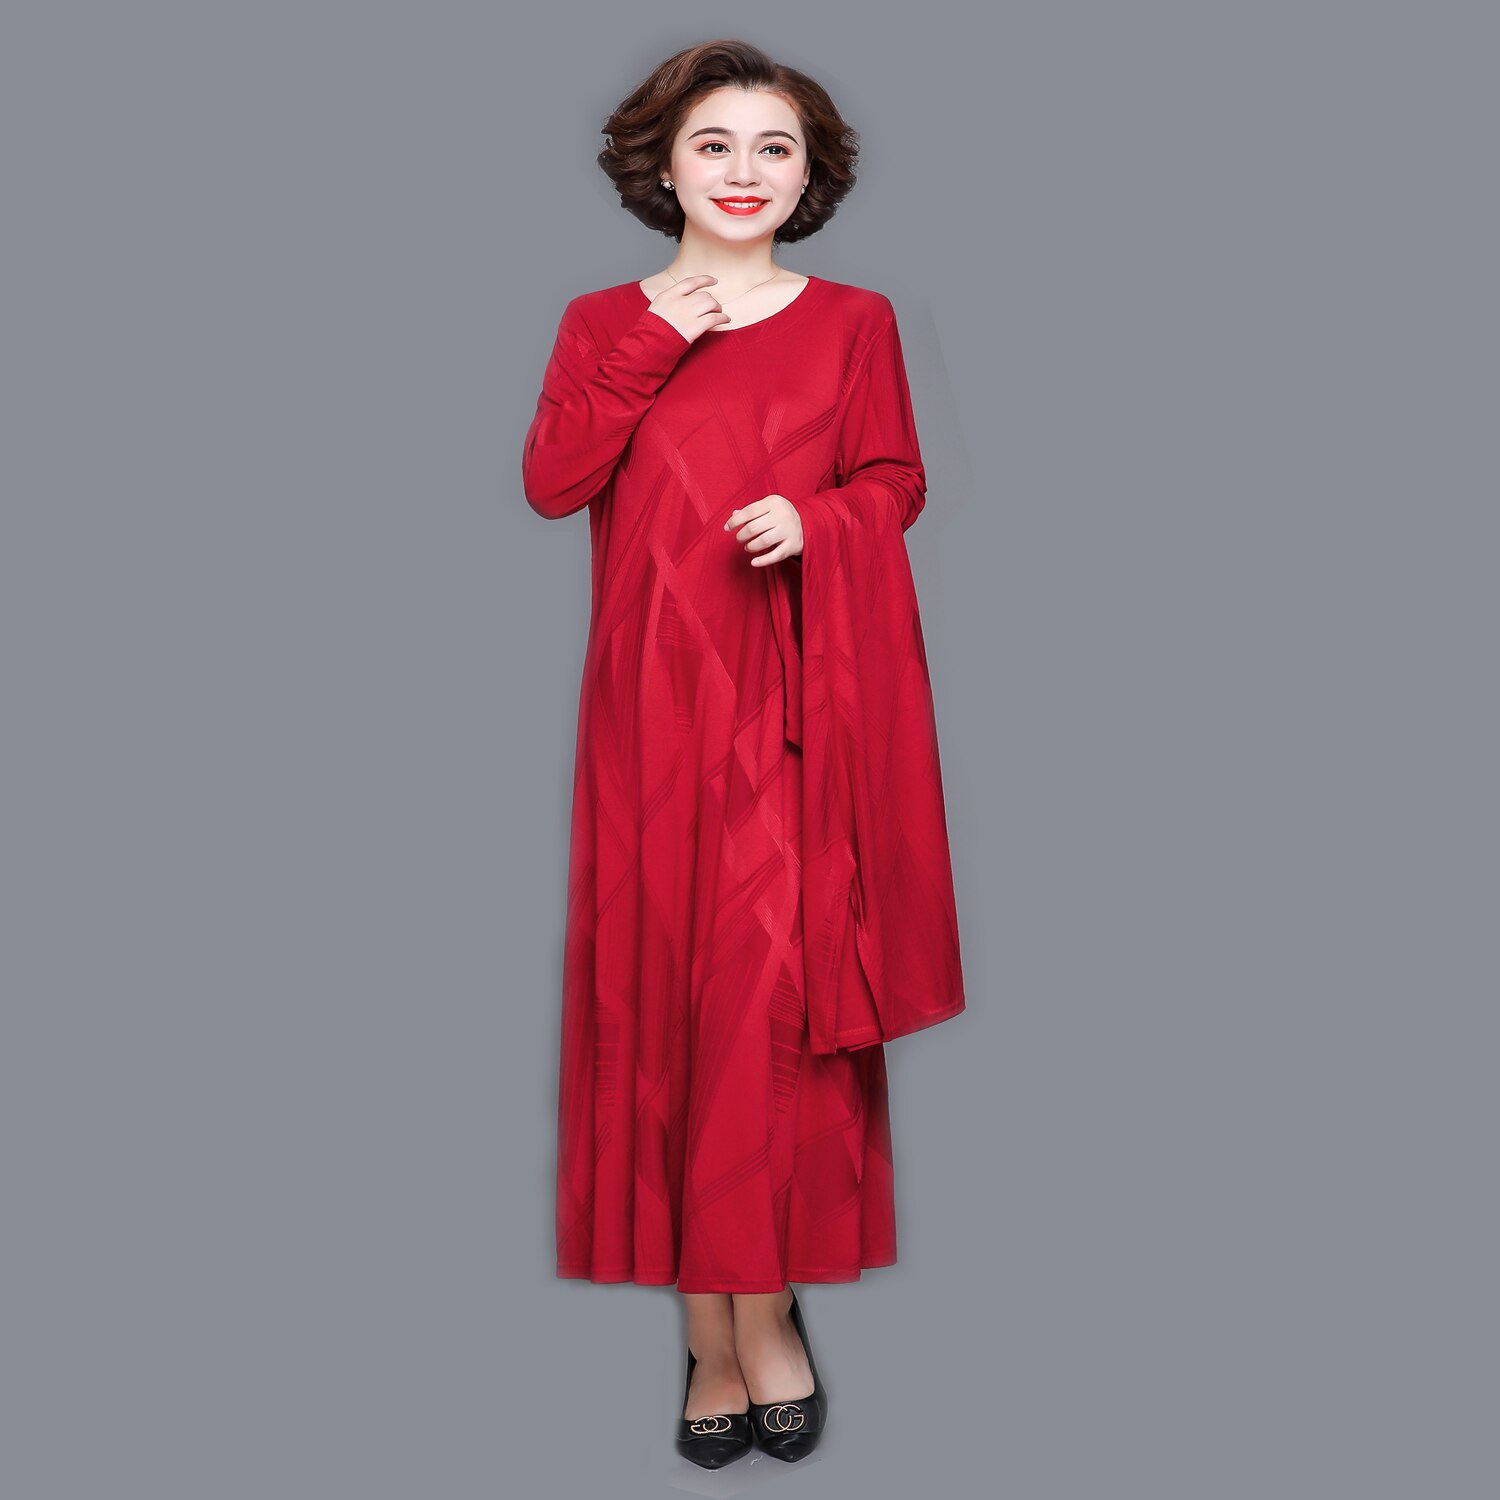 새로운 투피스 양복 중년 여성 플러스 사이즈 의류 긴 소매 빨간 드레스 o 목 가을 casul 드레스 의류